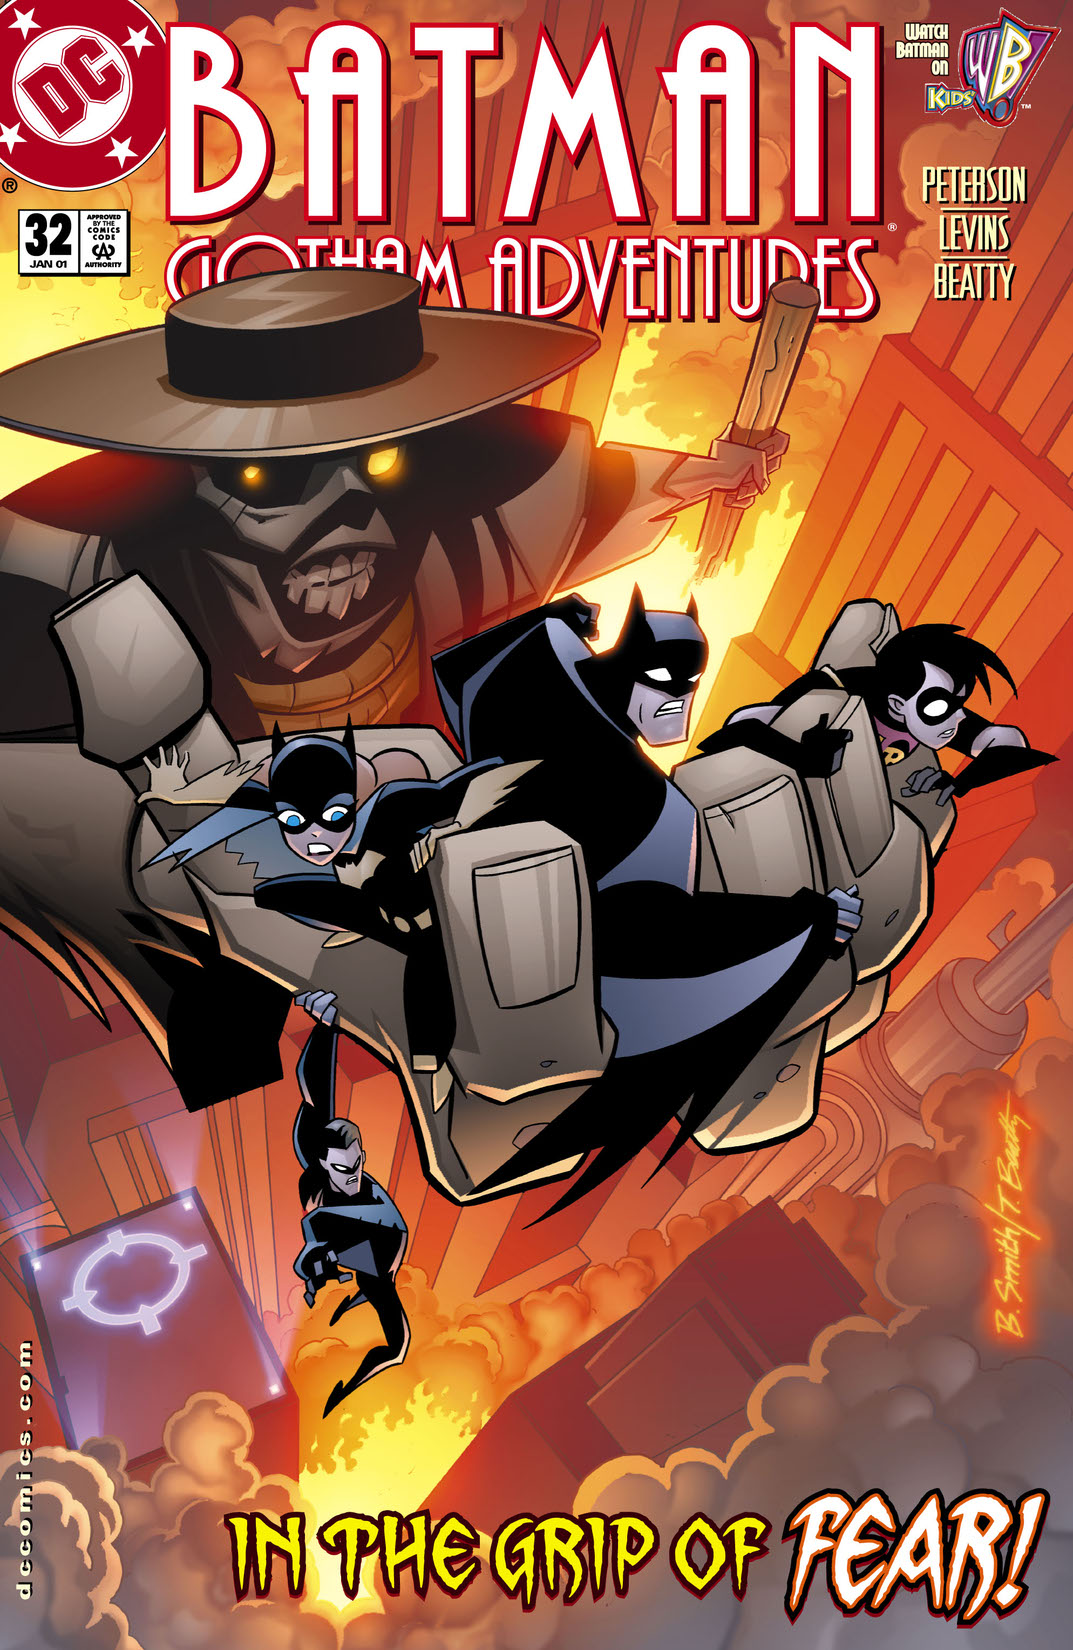 Batman: Gotham Adventures #32 preview images